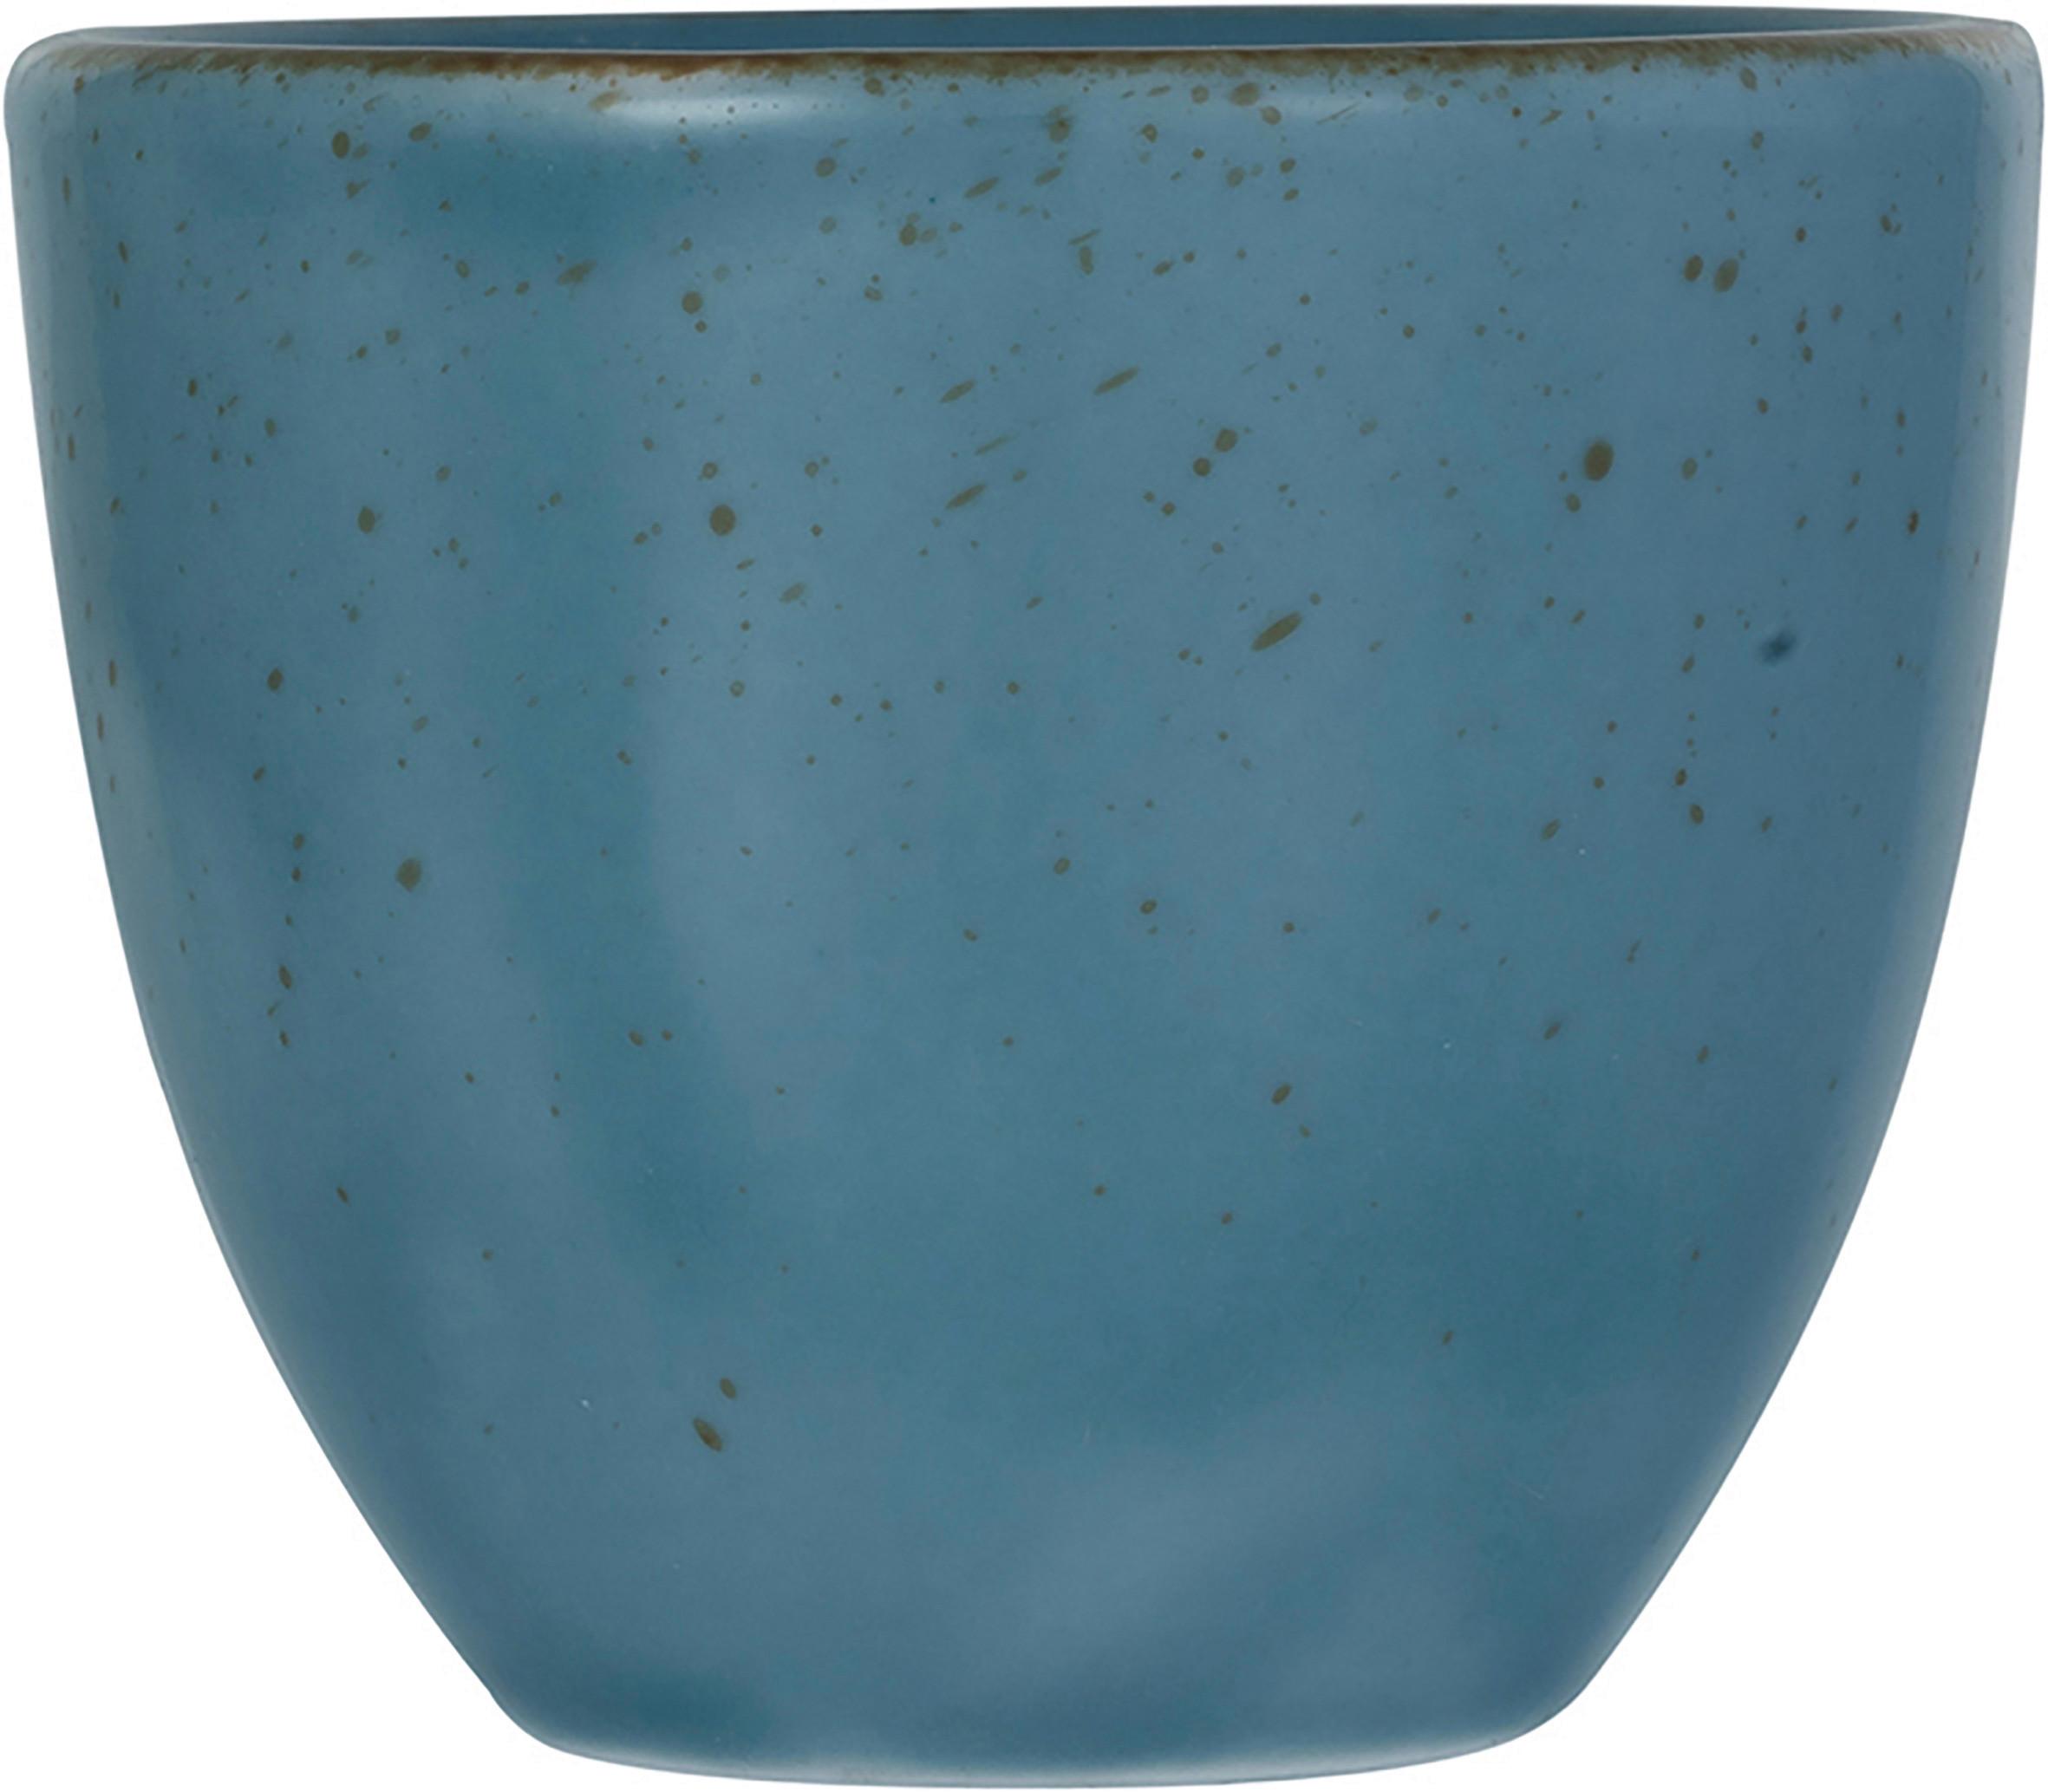 FILIŻANKA DO ESPRESSO CAPRI - niebieski, Modern, ceramika (6,5/6,5/6cm) - Premium Living